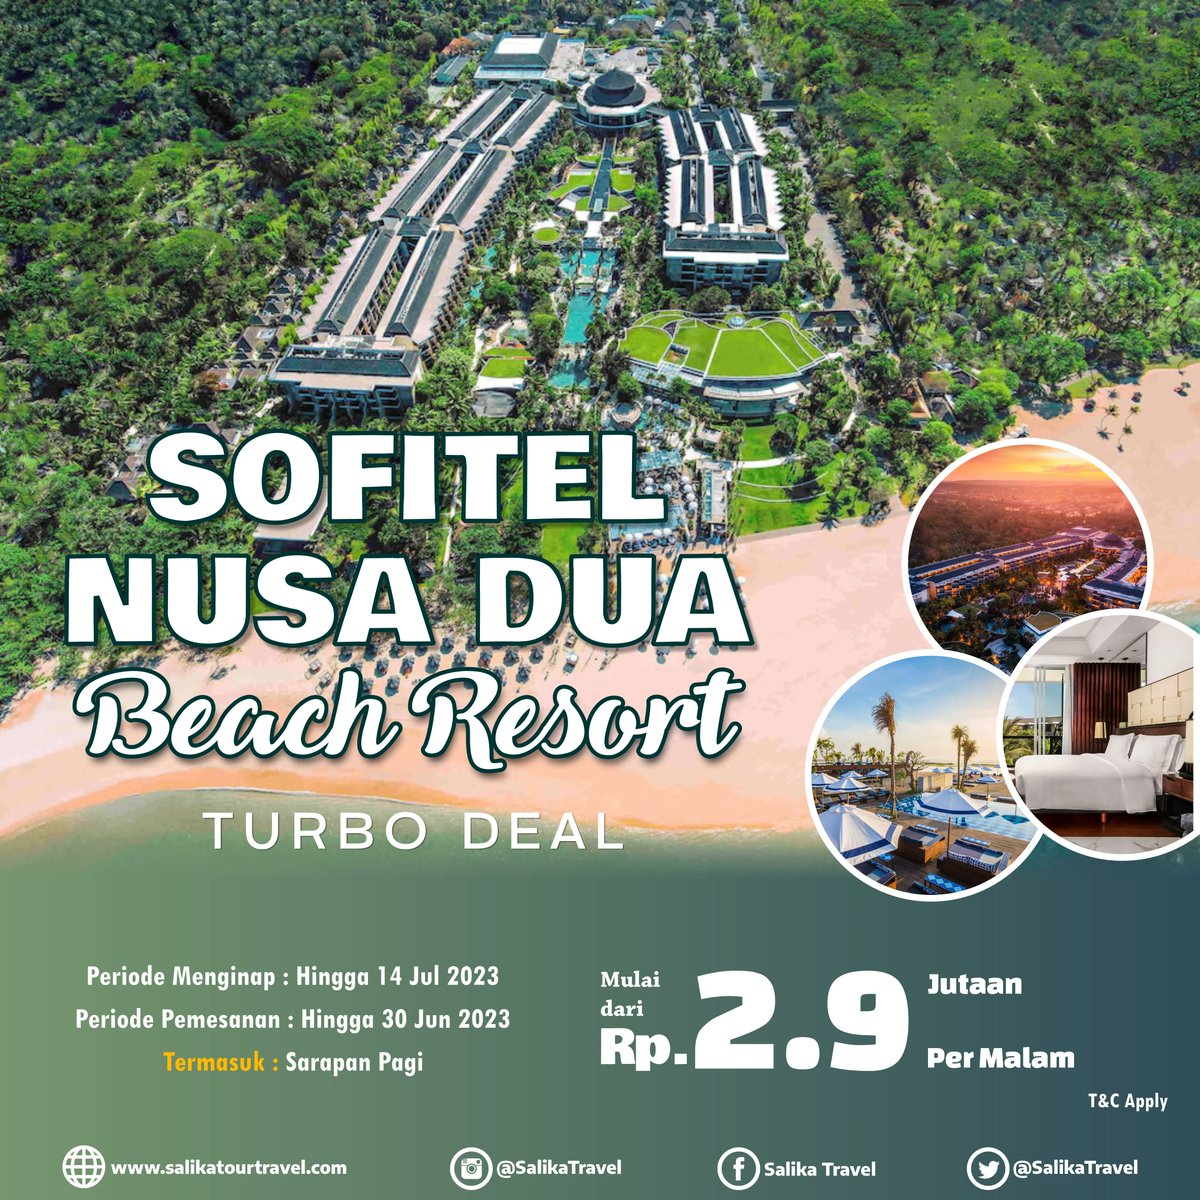 Sofitel Bali Nusa Dua Beach Resort berjarak 13 km dari Bandara Internasional Ngurah Rai & 5 km dari Tanjung Benoa Watersport

Info selengkapnya klik
bit.ly/SLKSofitelNusa…

atau bisa menghubungi wa.me/6281803863912

T&C Apply
#SalikaTravel
#HotelOffer
#HotelPromo
#HotelBali